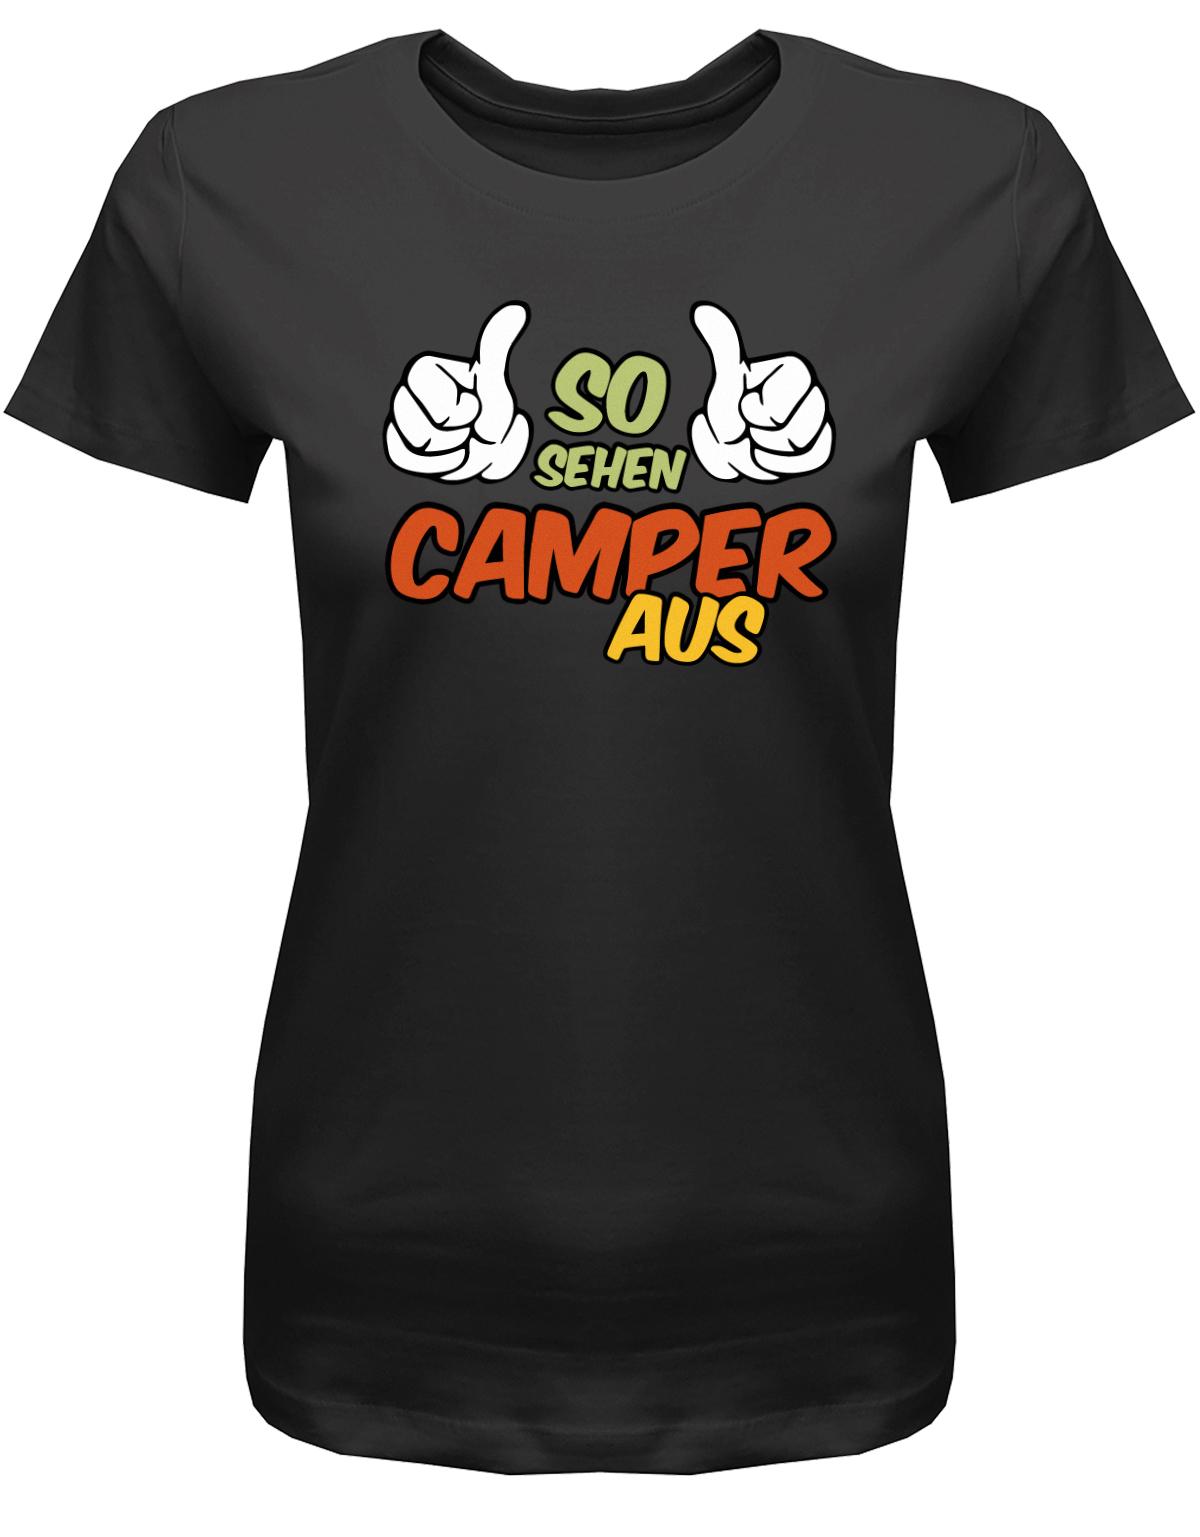 So-sehen-Camper-aus-Damen-Camping-Shirt-schwarz1s1VnTcVFaRkr